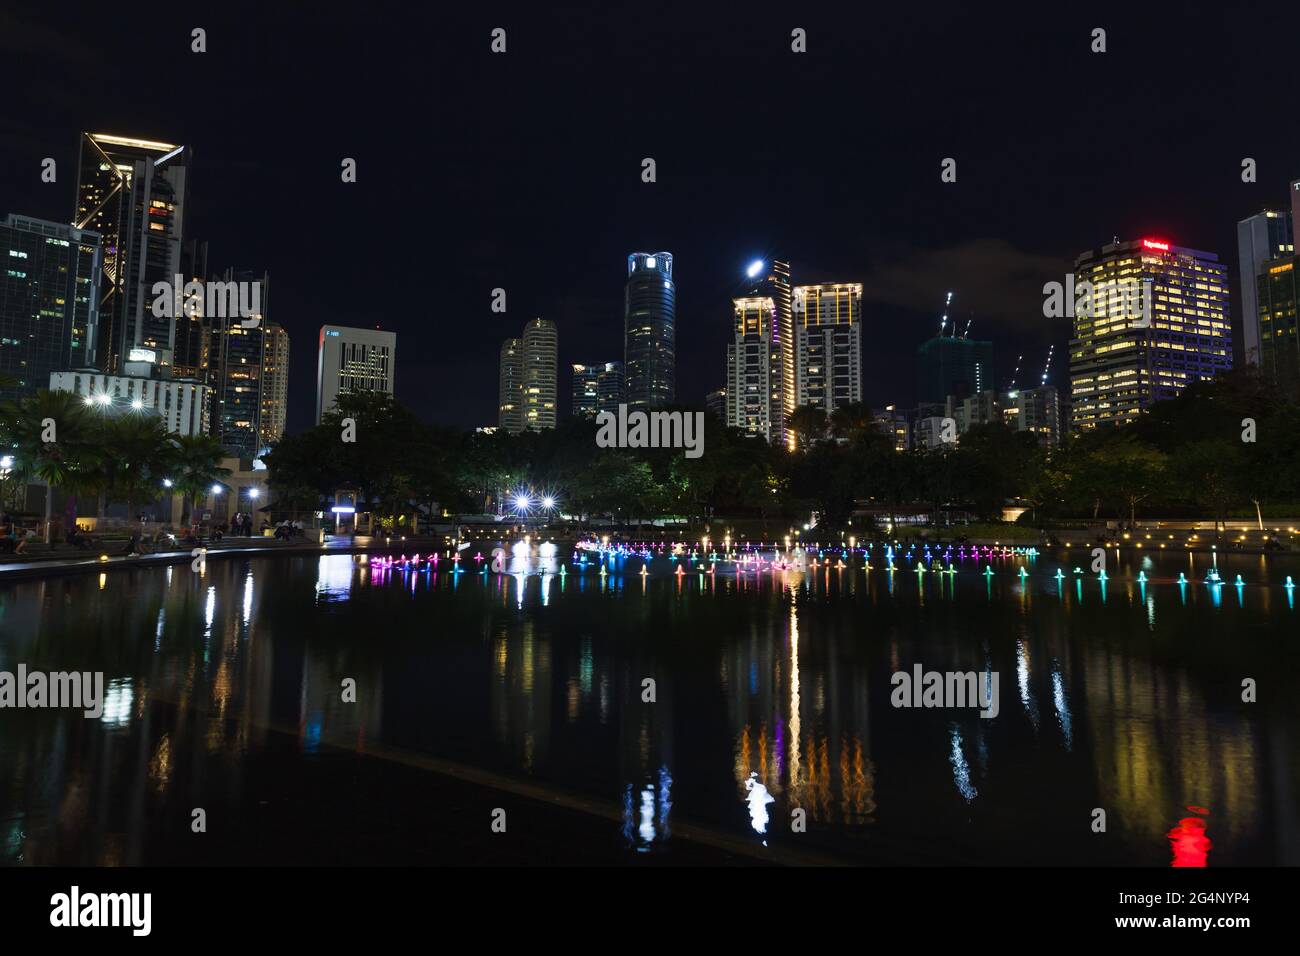 Kuala Lumpur, Malesia - 28 novembre 2019: Vista parco KLCC con fontana illuminata di notte Foto Stock